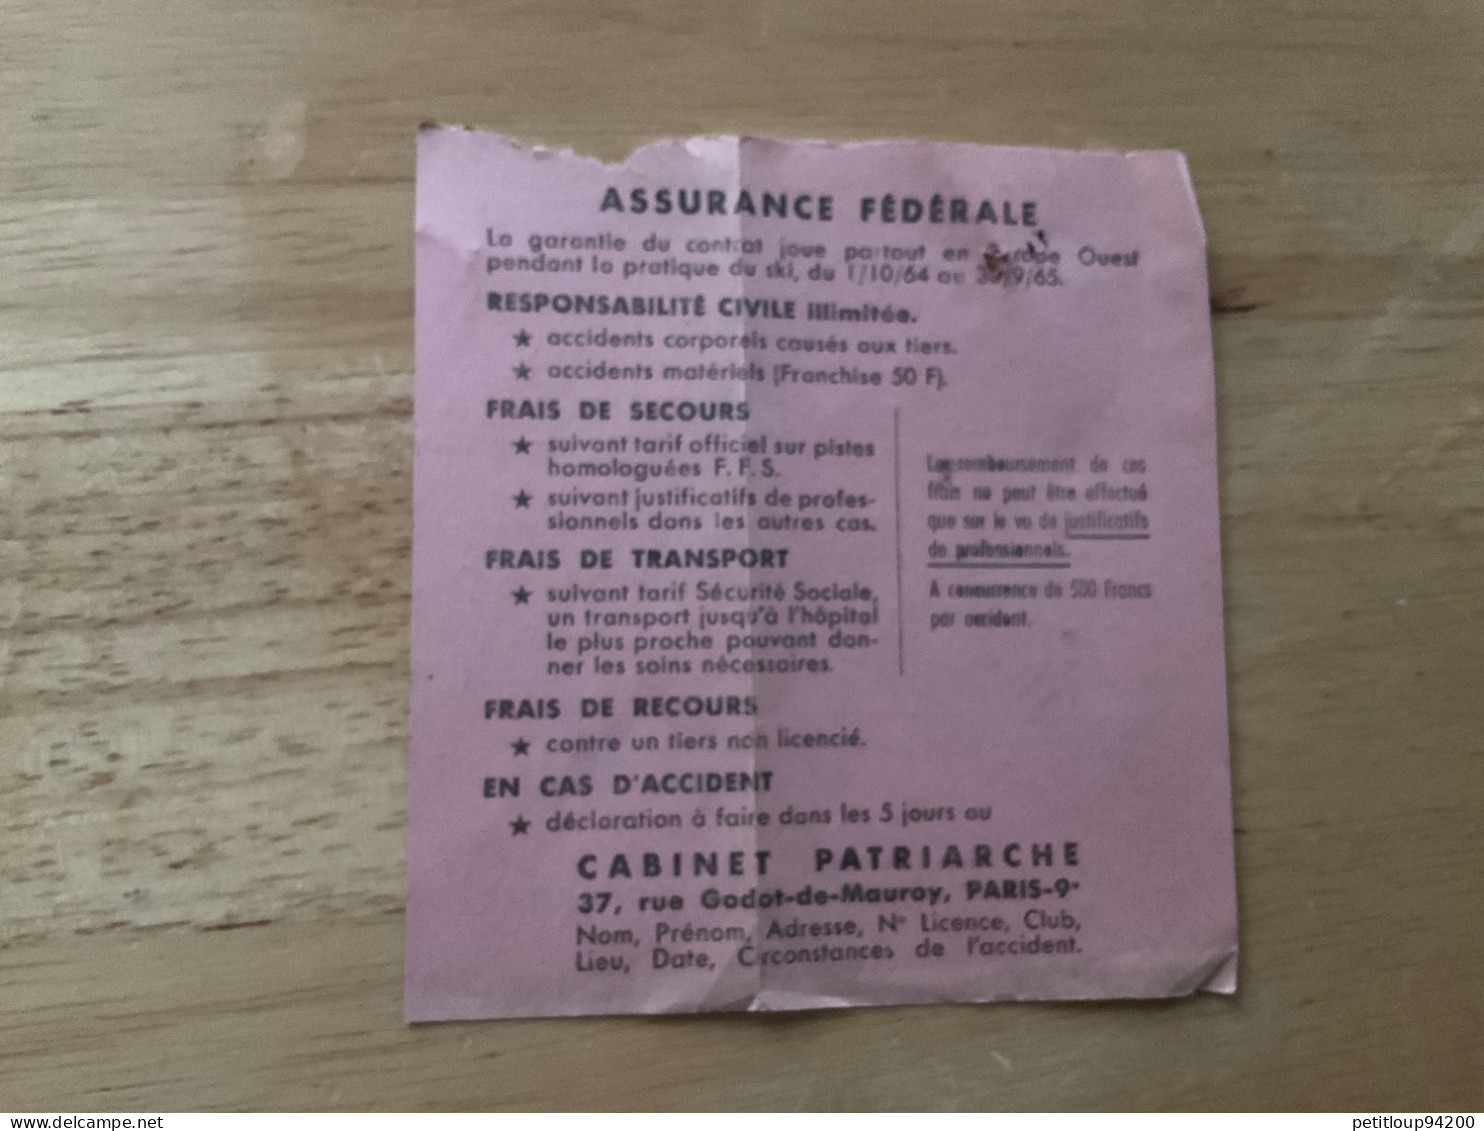 FÉDÉRATION FRANÇAISE DE SKI Carte Fédérale  FFS  Comité PARIS  Année 1965 - Tessere Associative